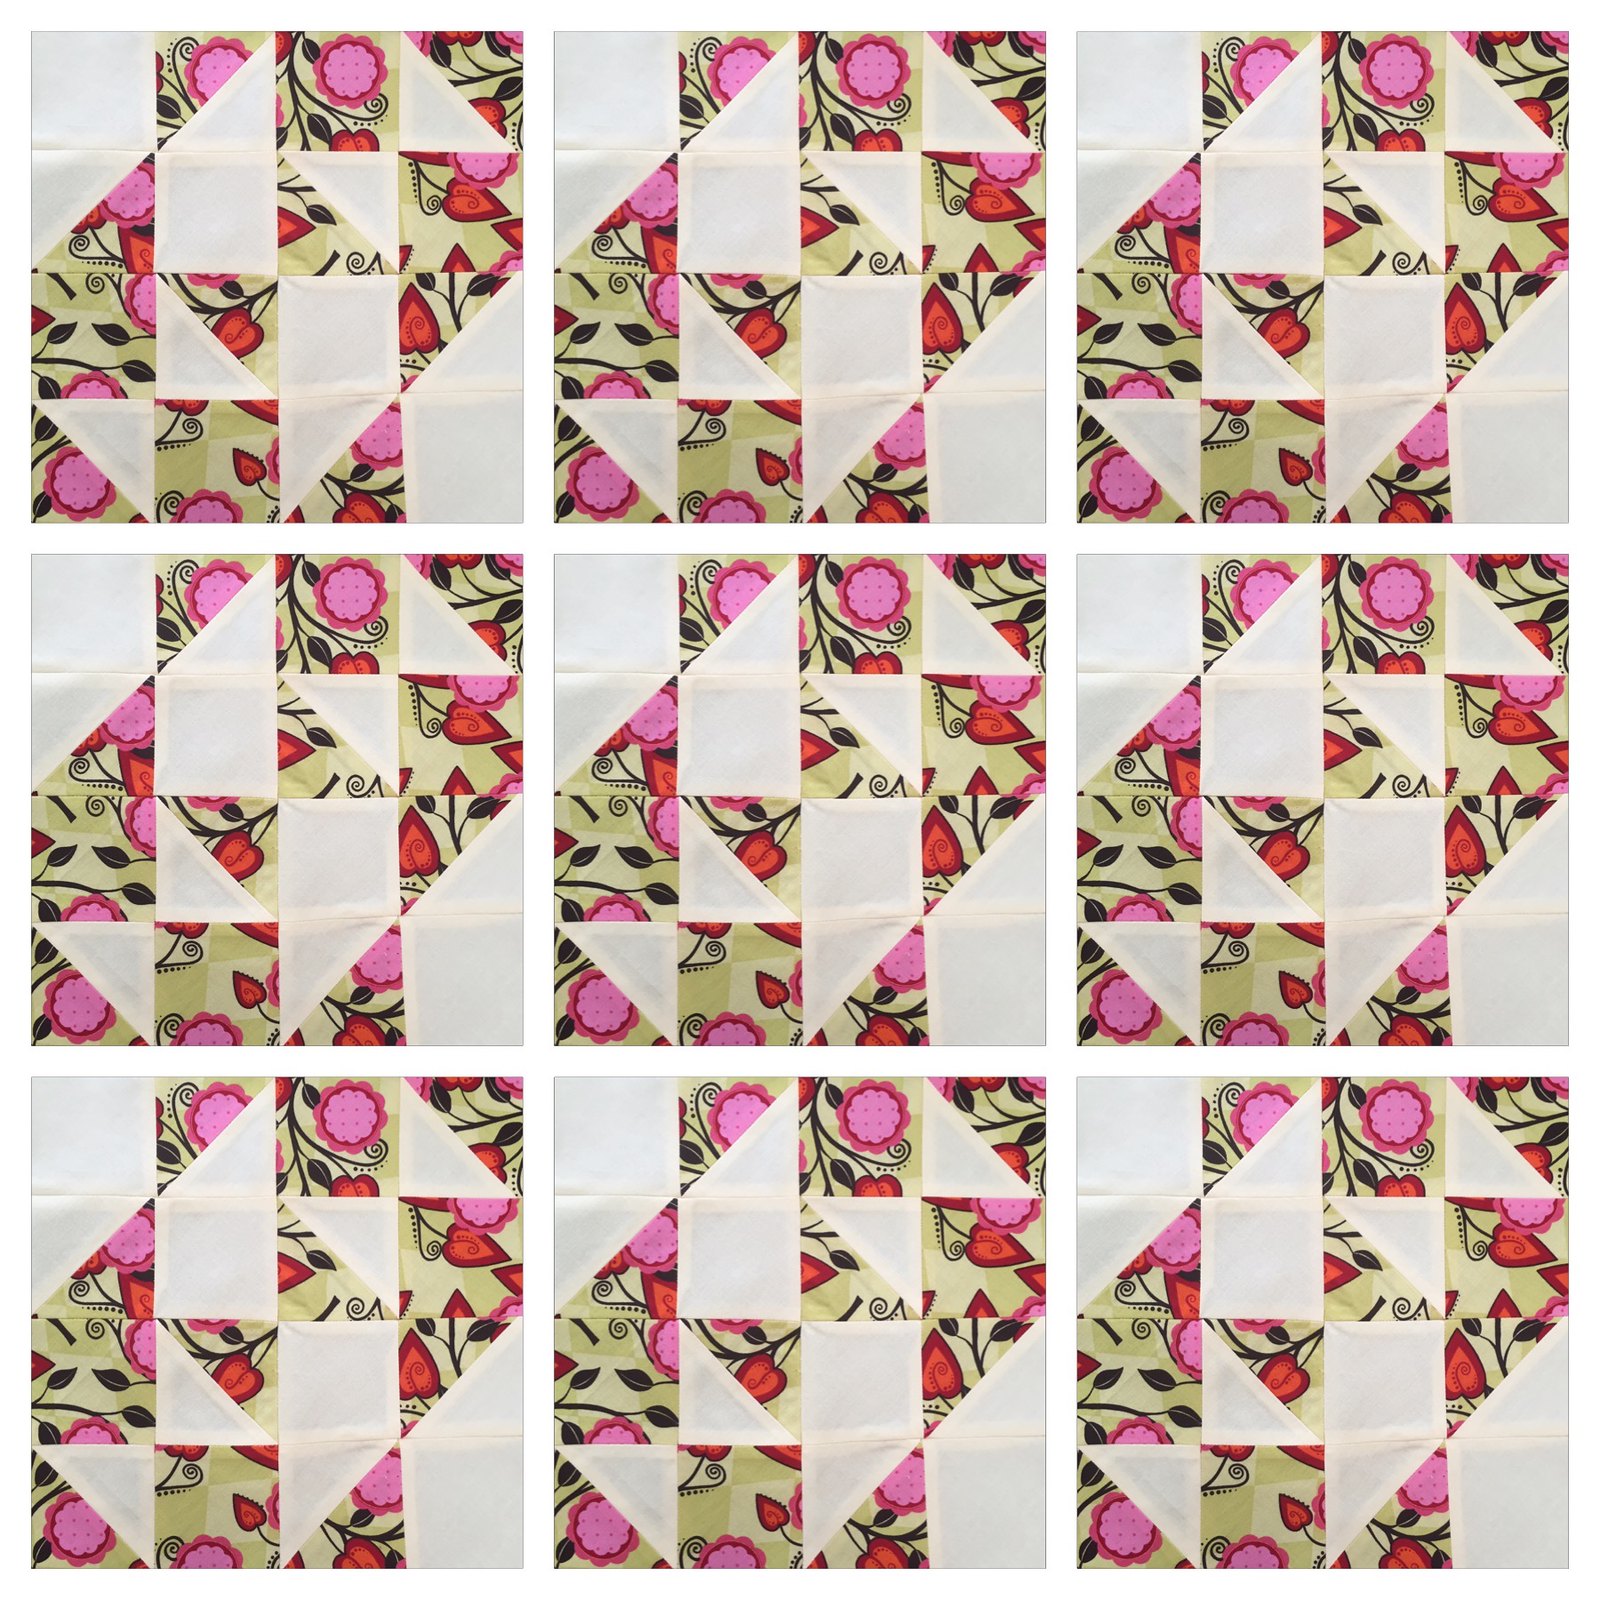 Half pinwheels and bows quilt block